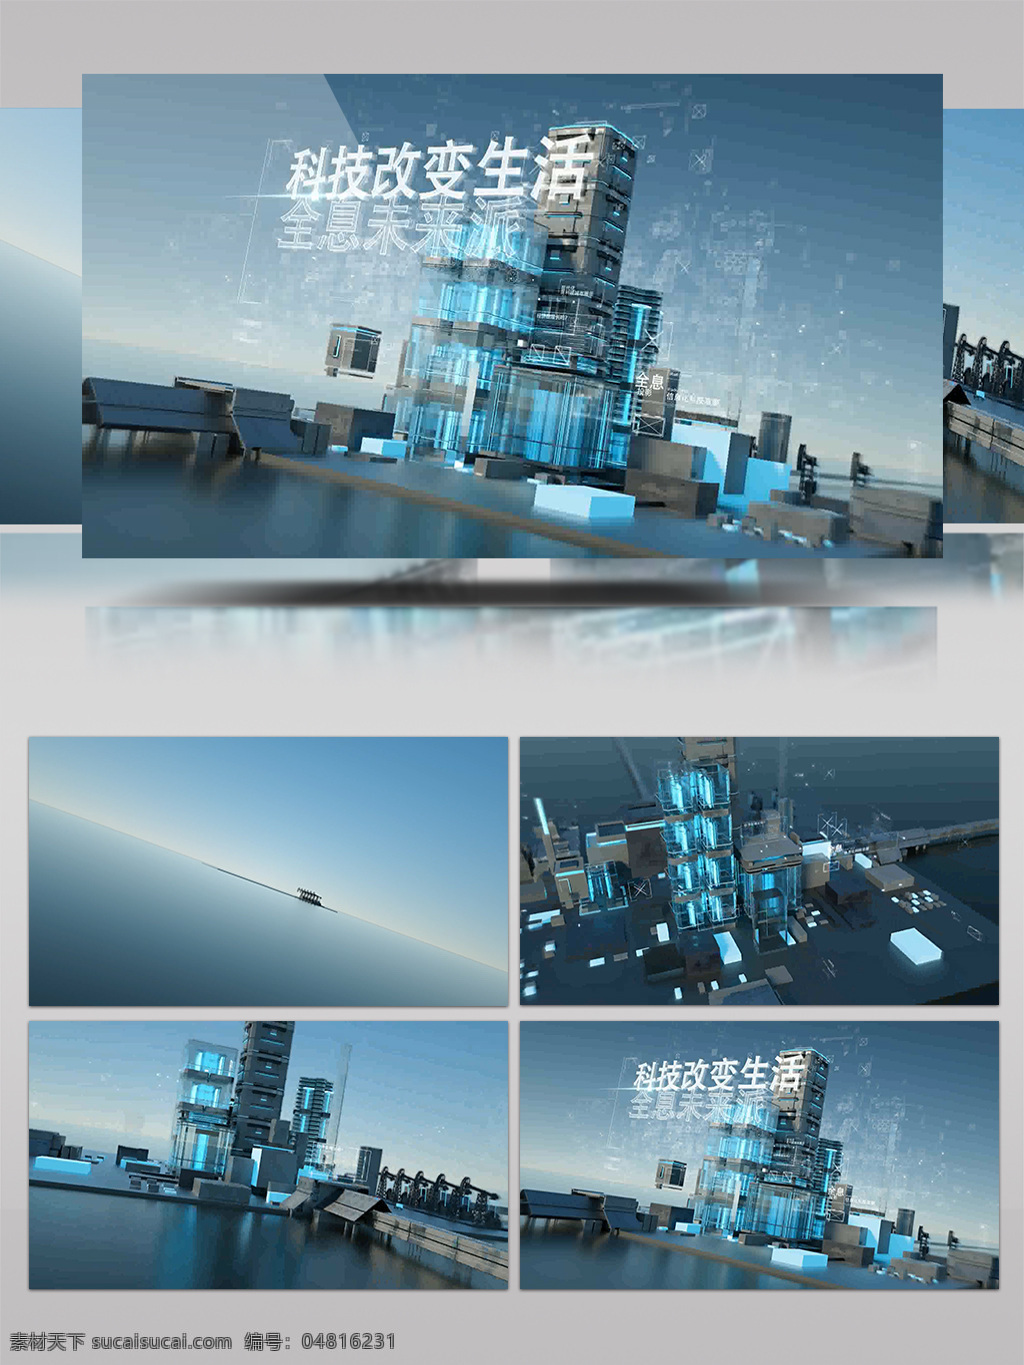 全息 科技 建筑 公司 宣传 大气 科技感 蓝色 科技风 震撼 高科技 片头